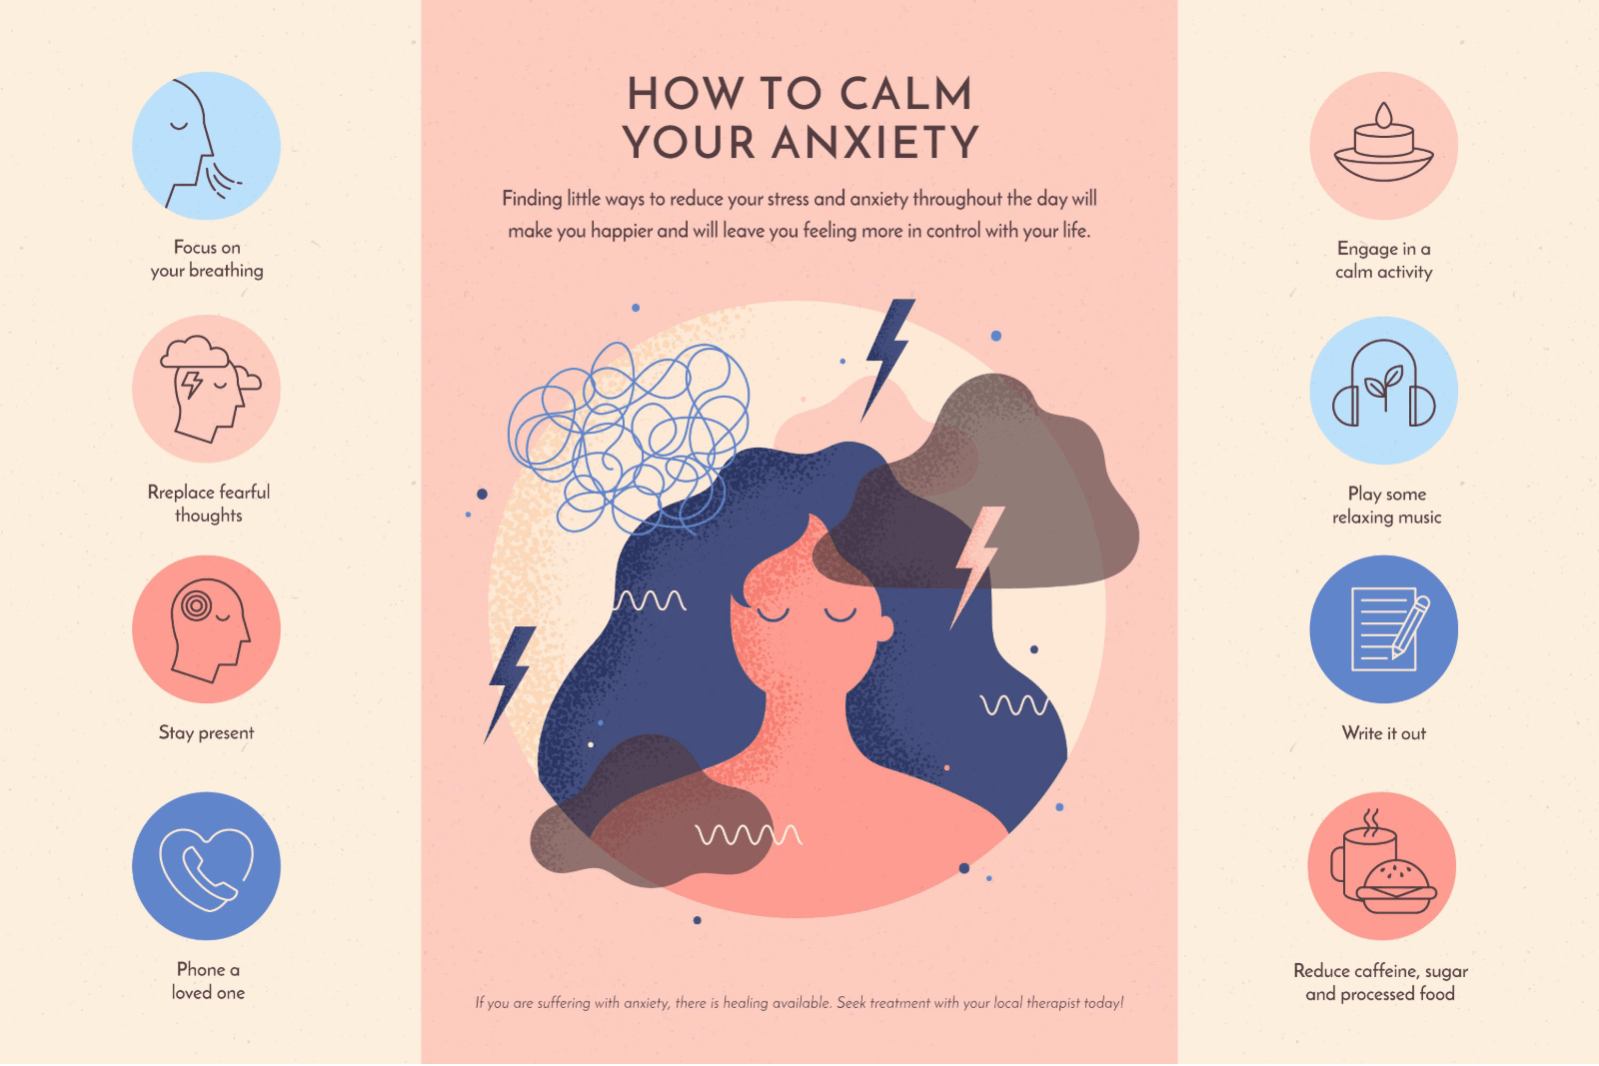 Comment calmer l'anxiété et se sentir mieux rapidement